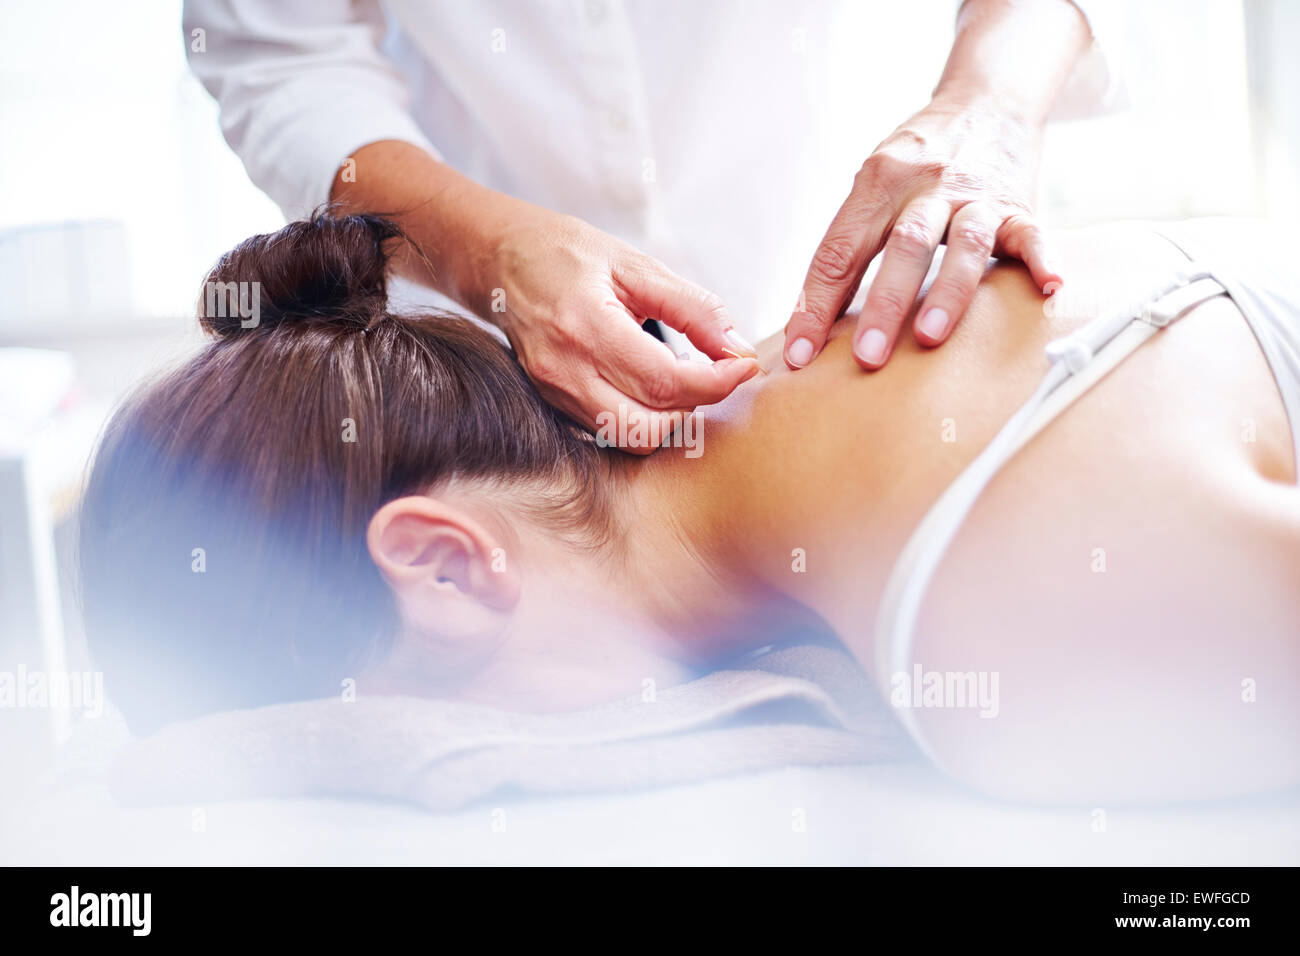 L'acupuncteur acupuncture needles to woman's neck Banque D'Images